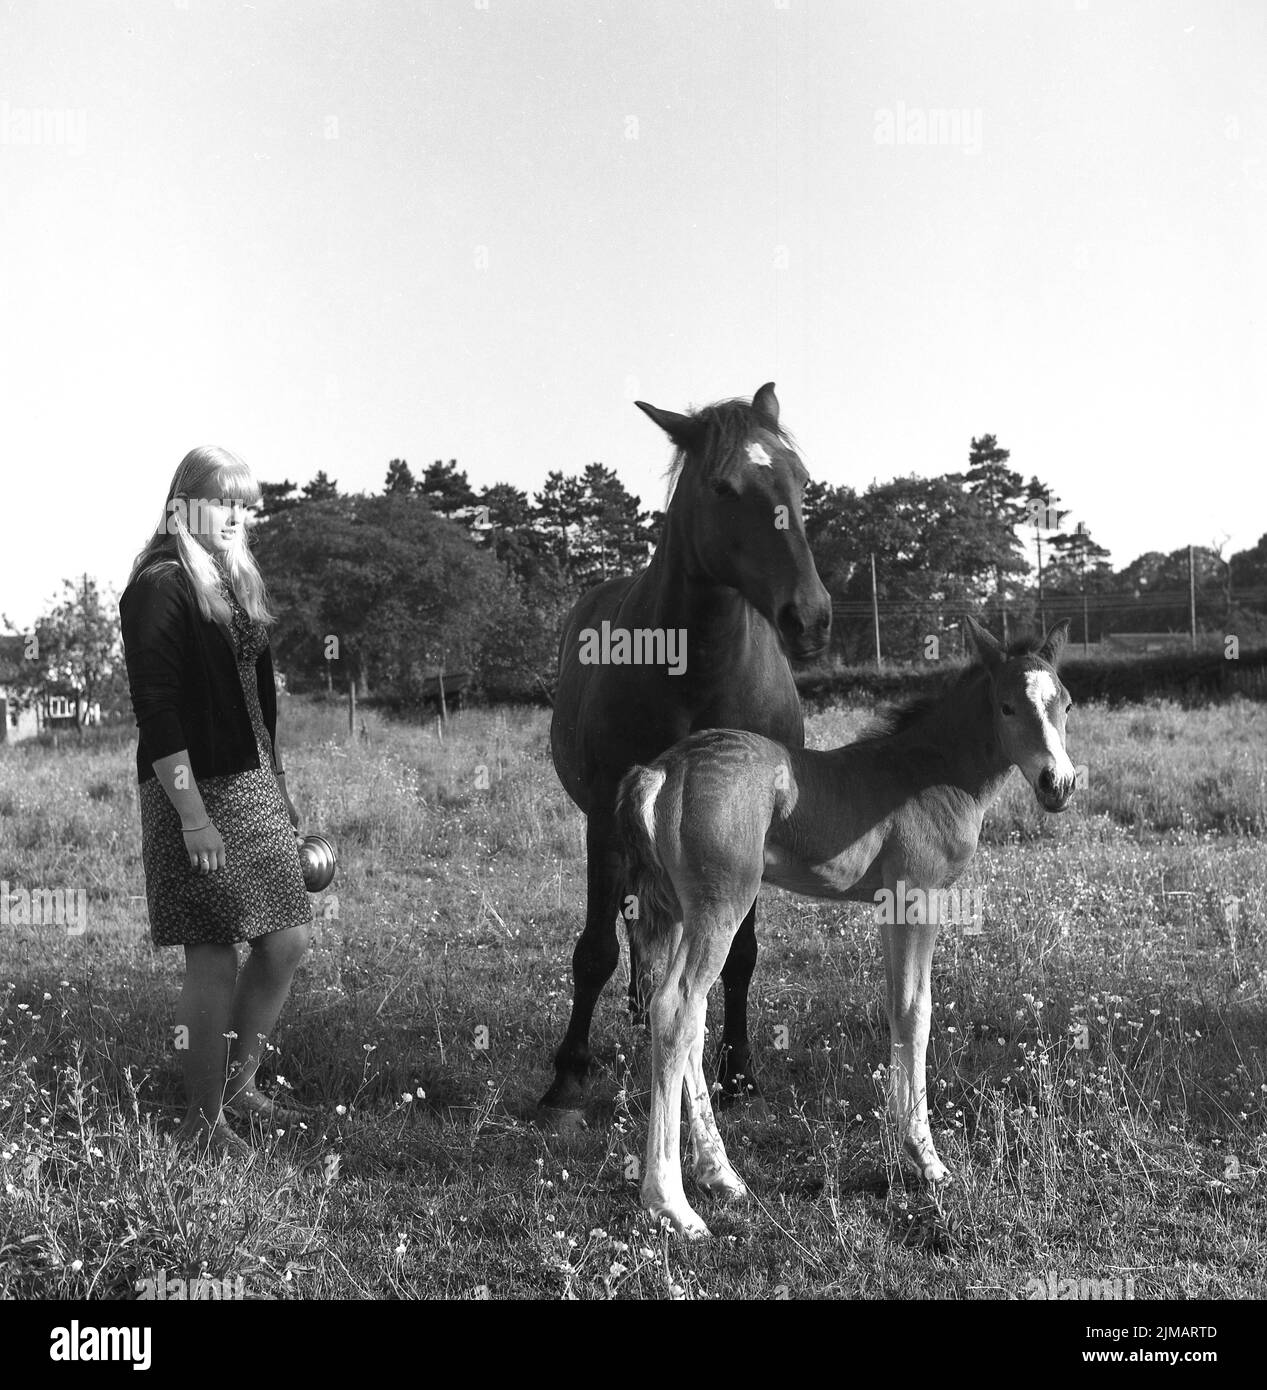 1969, histórico, una joven mujer parada en un campo junto a un caballo y su potro, Inglaterra, Reino Unido. Foto de stock